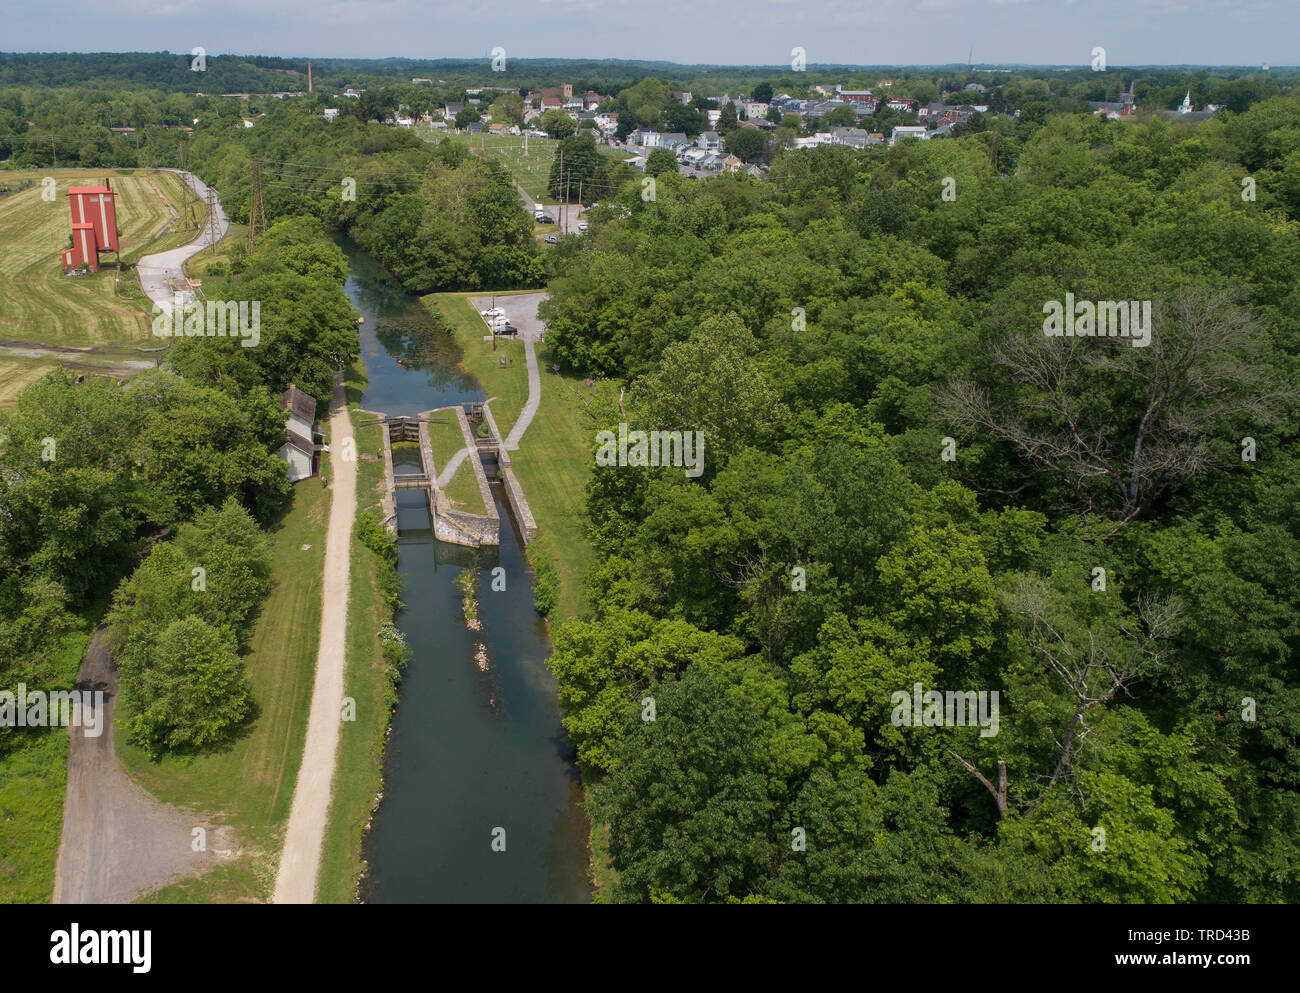 Vue aérienne panoramique jusqu'à la Bas Haut Chesapeake & Ohio Historique et structure du barrage écluse du canal Towpath Trail National Historical Park, Maryland, USA Banque D'Images